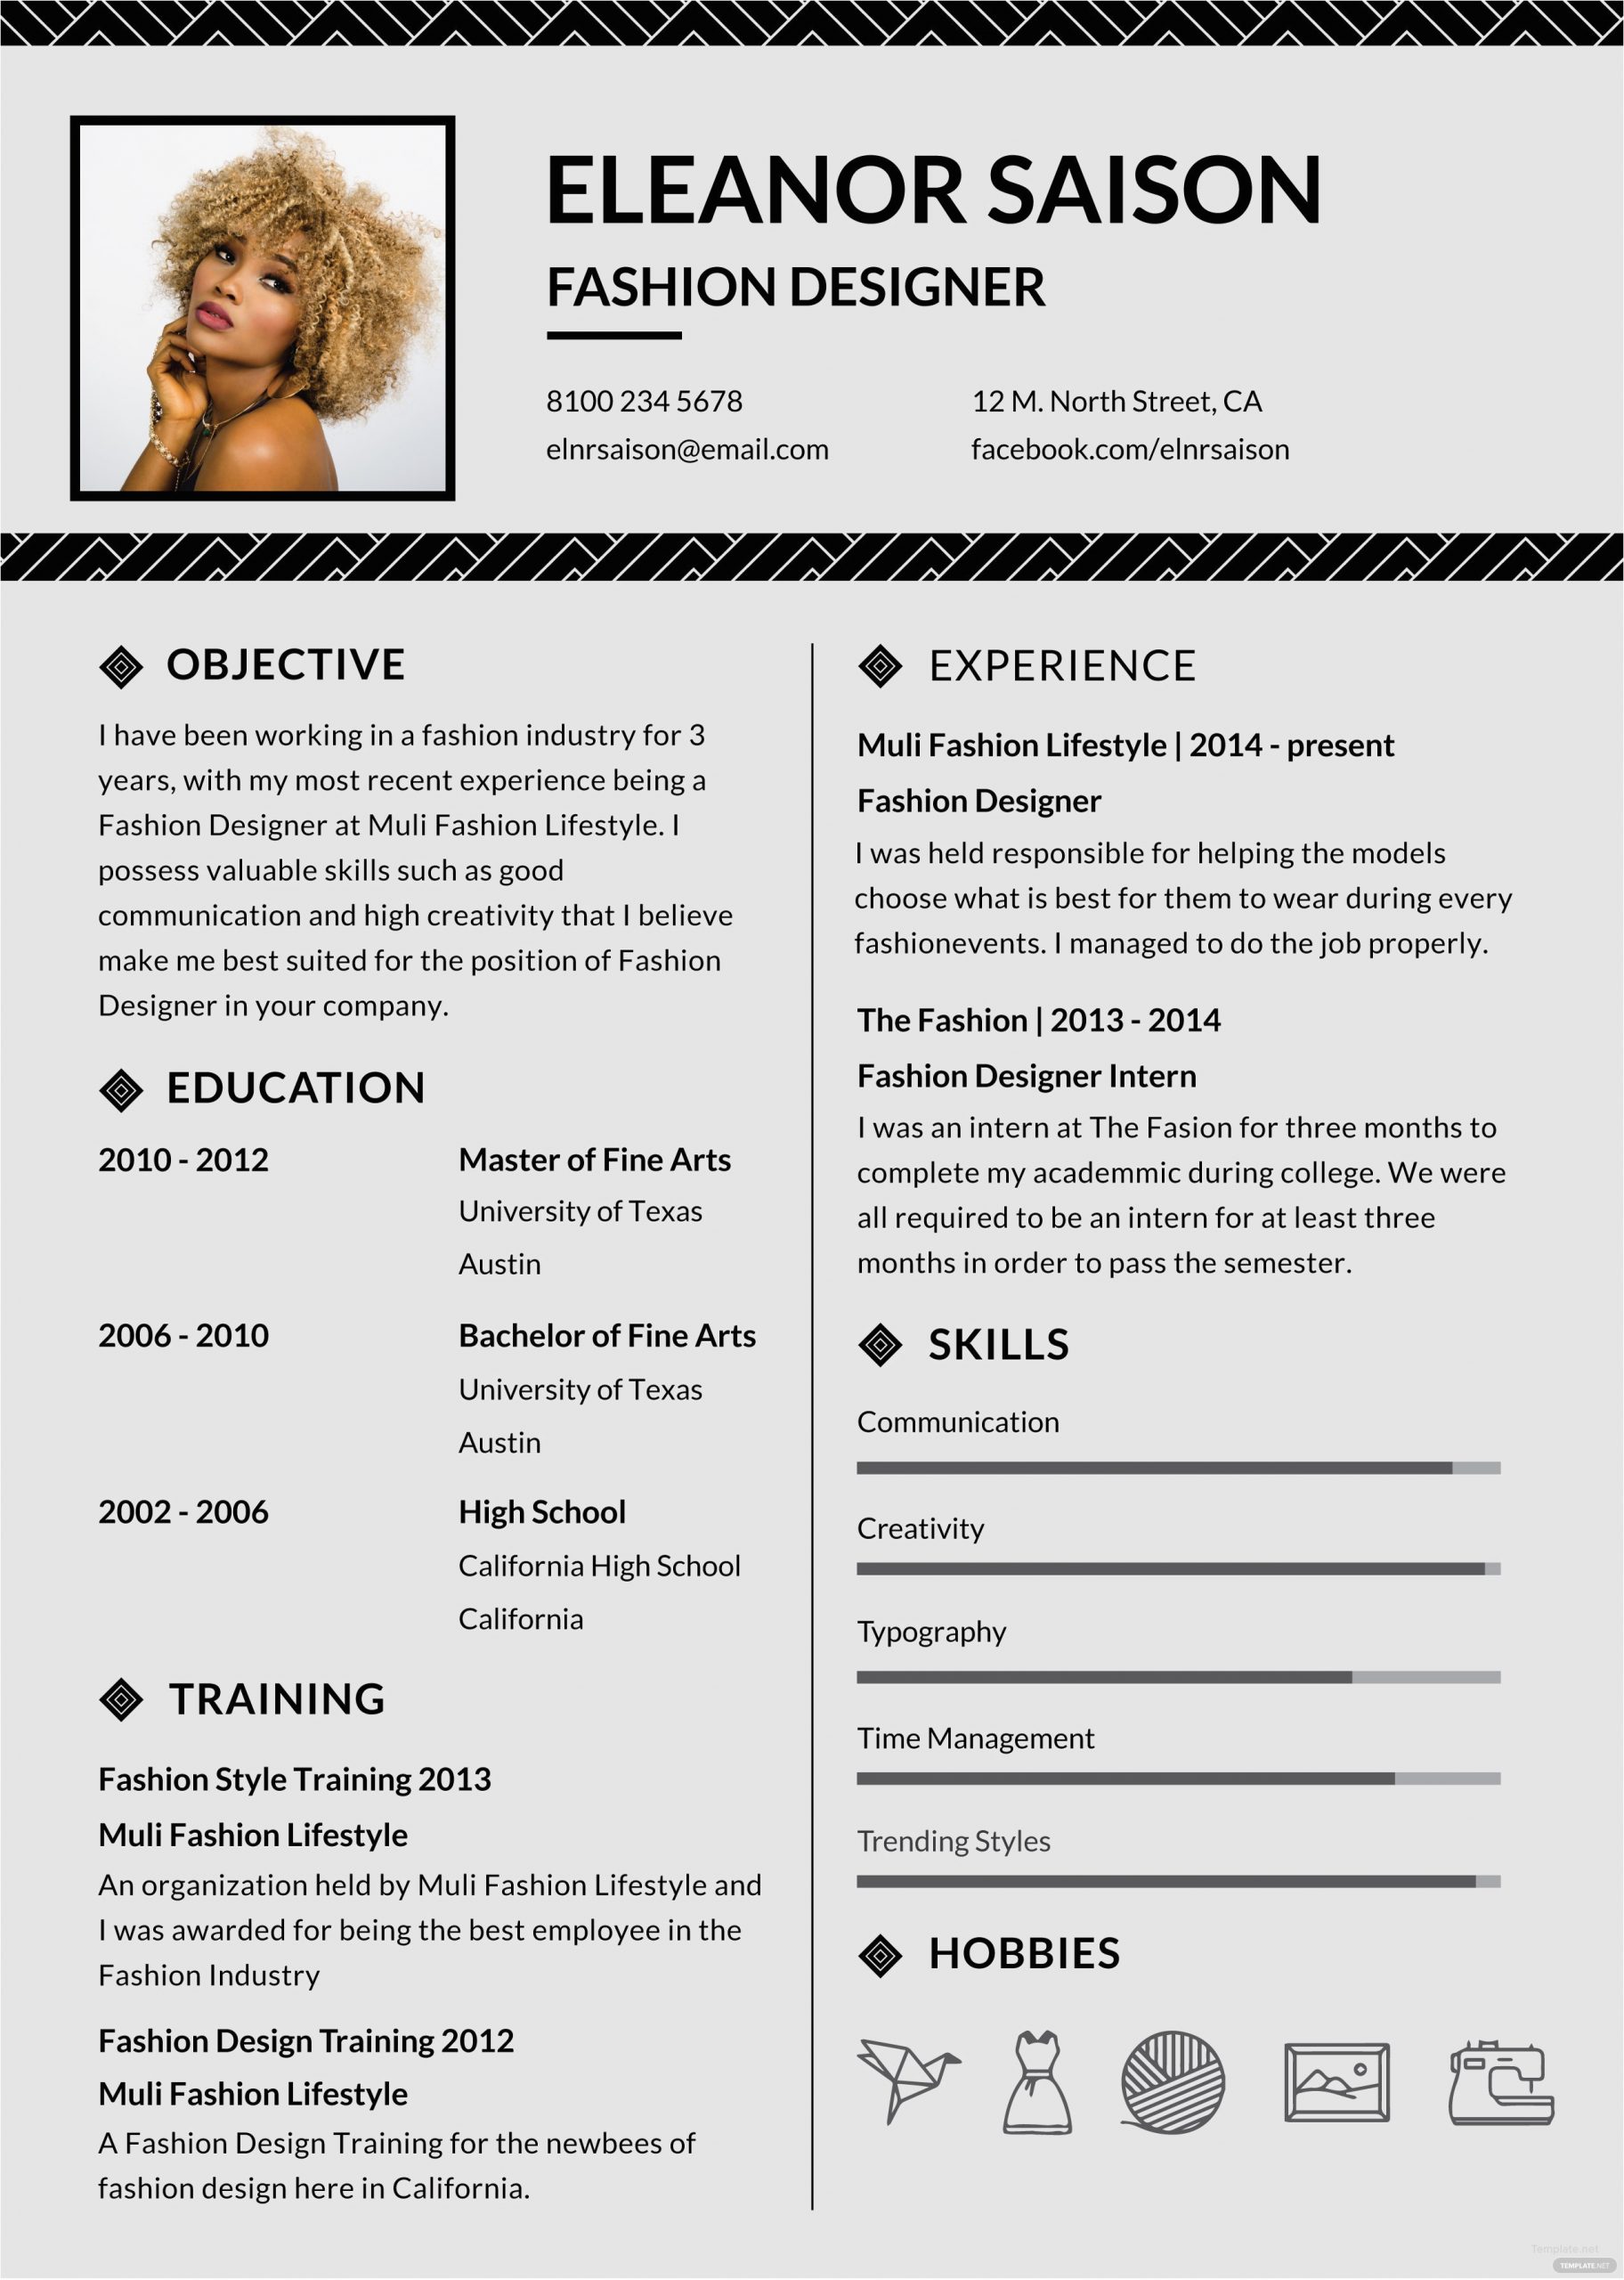 Sample Resume for Fashion Designer Fresher Free assistant Fashion Designer Resume and Cv Template In